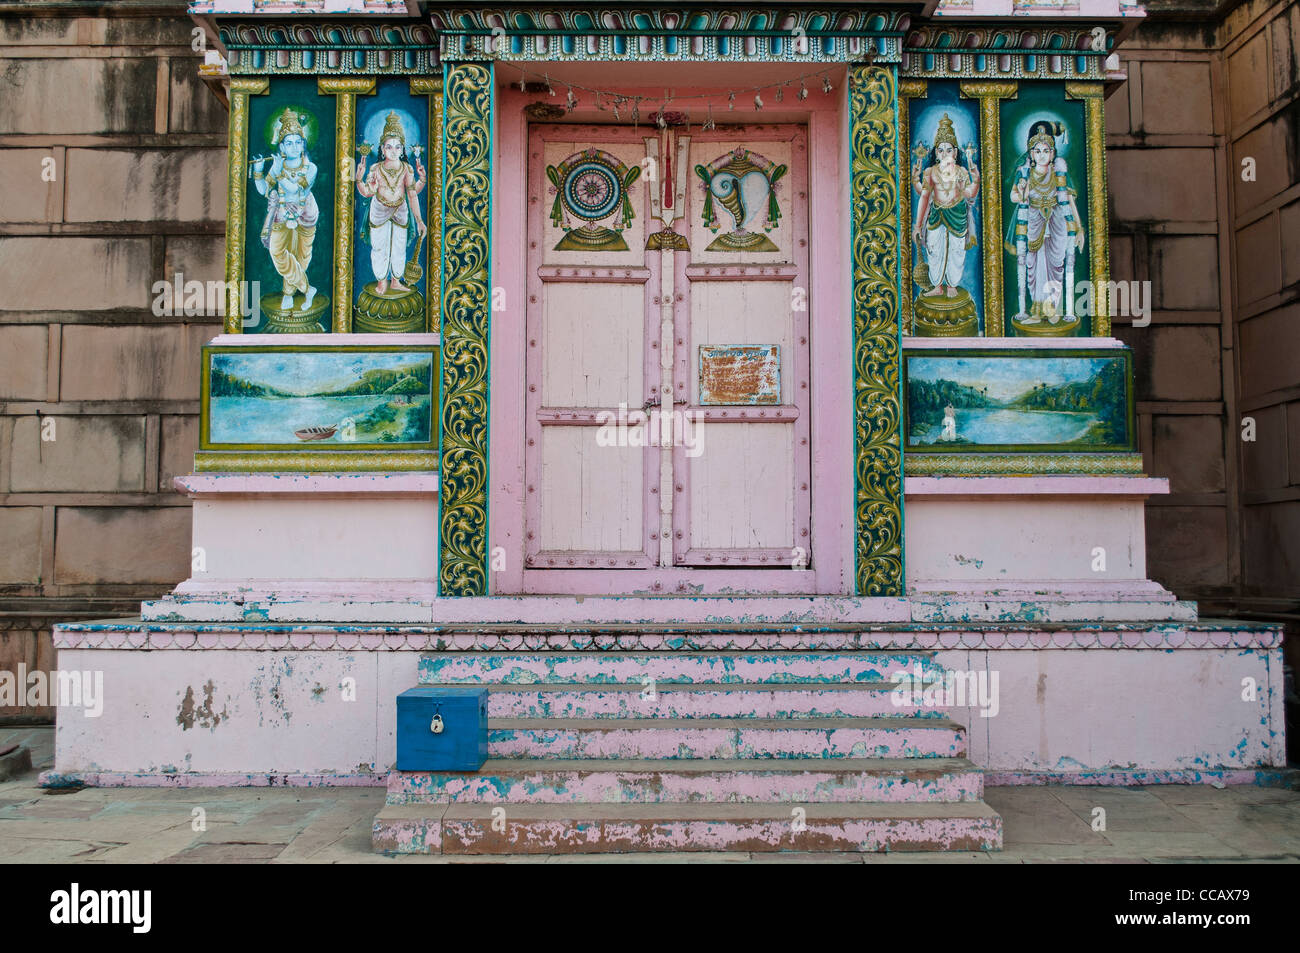 Peintes de couleurs vives de culte avec un don fort en face d'elle, Rangaji mandir, Vrindavan, Inde Banque D'Images